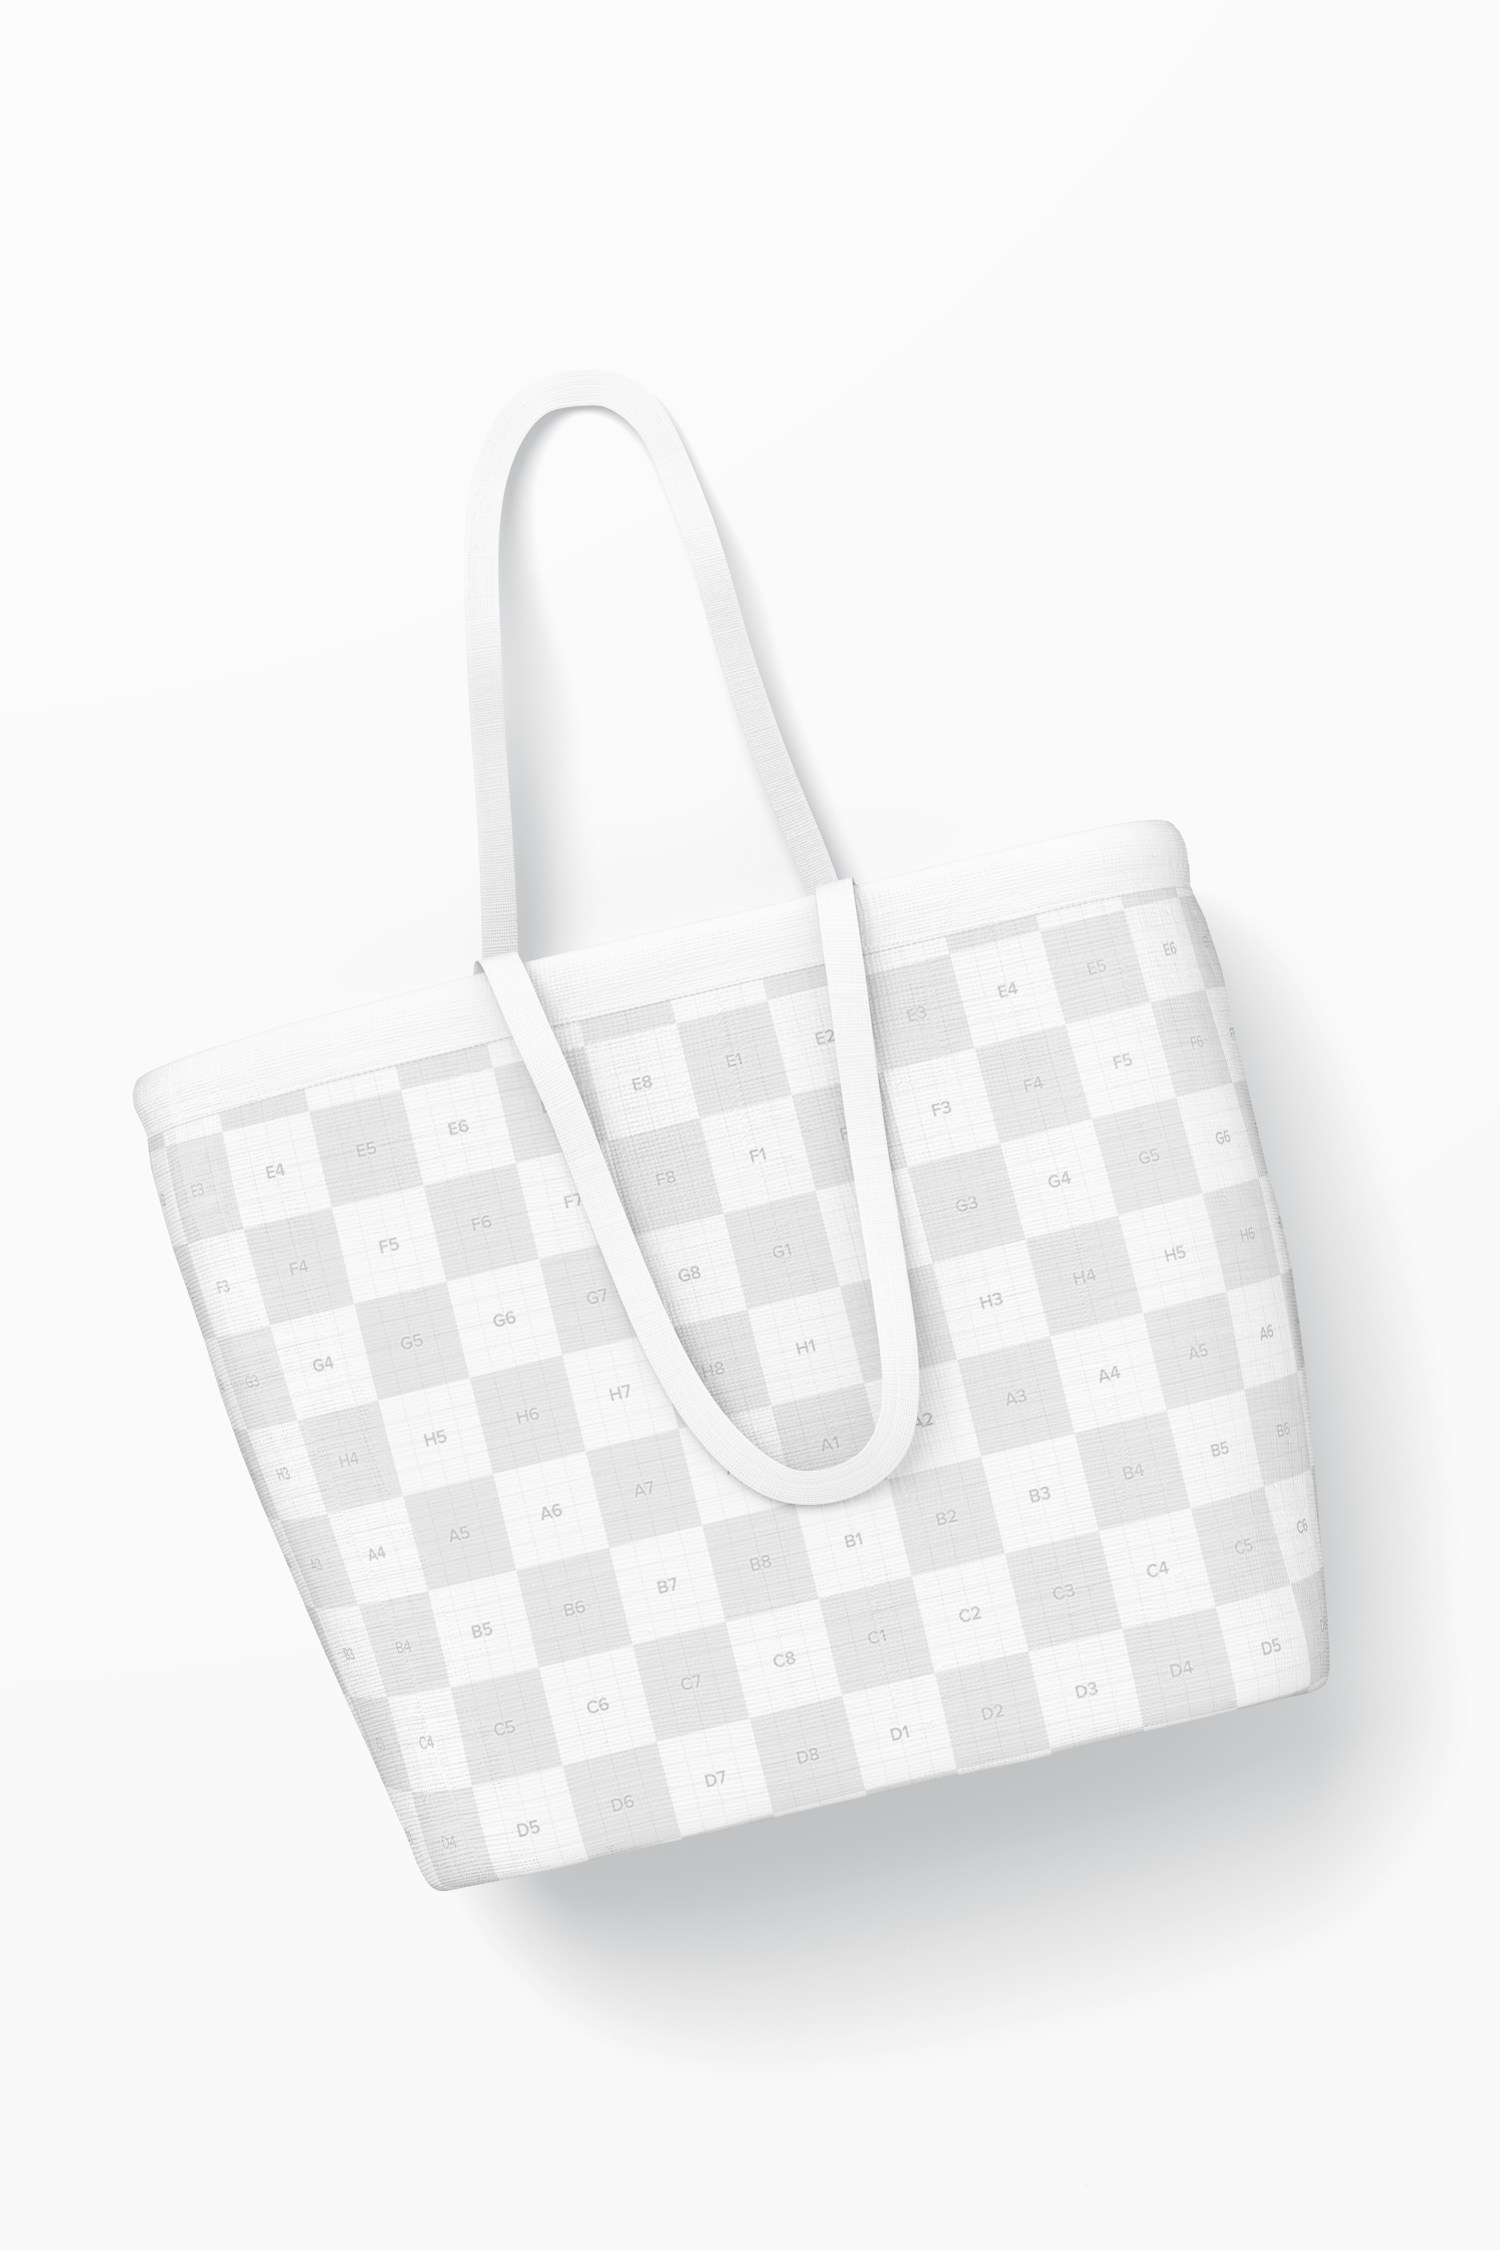 Designer Shopping Bag Mockup